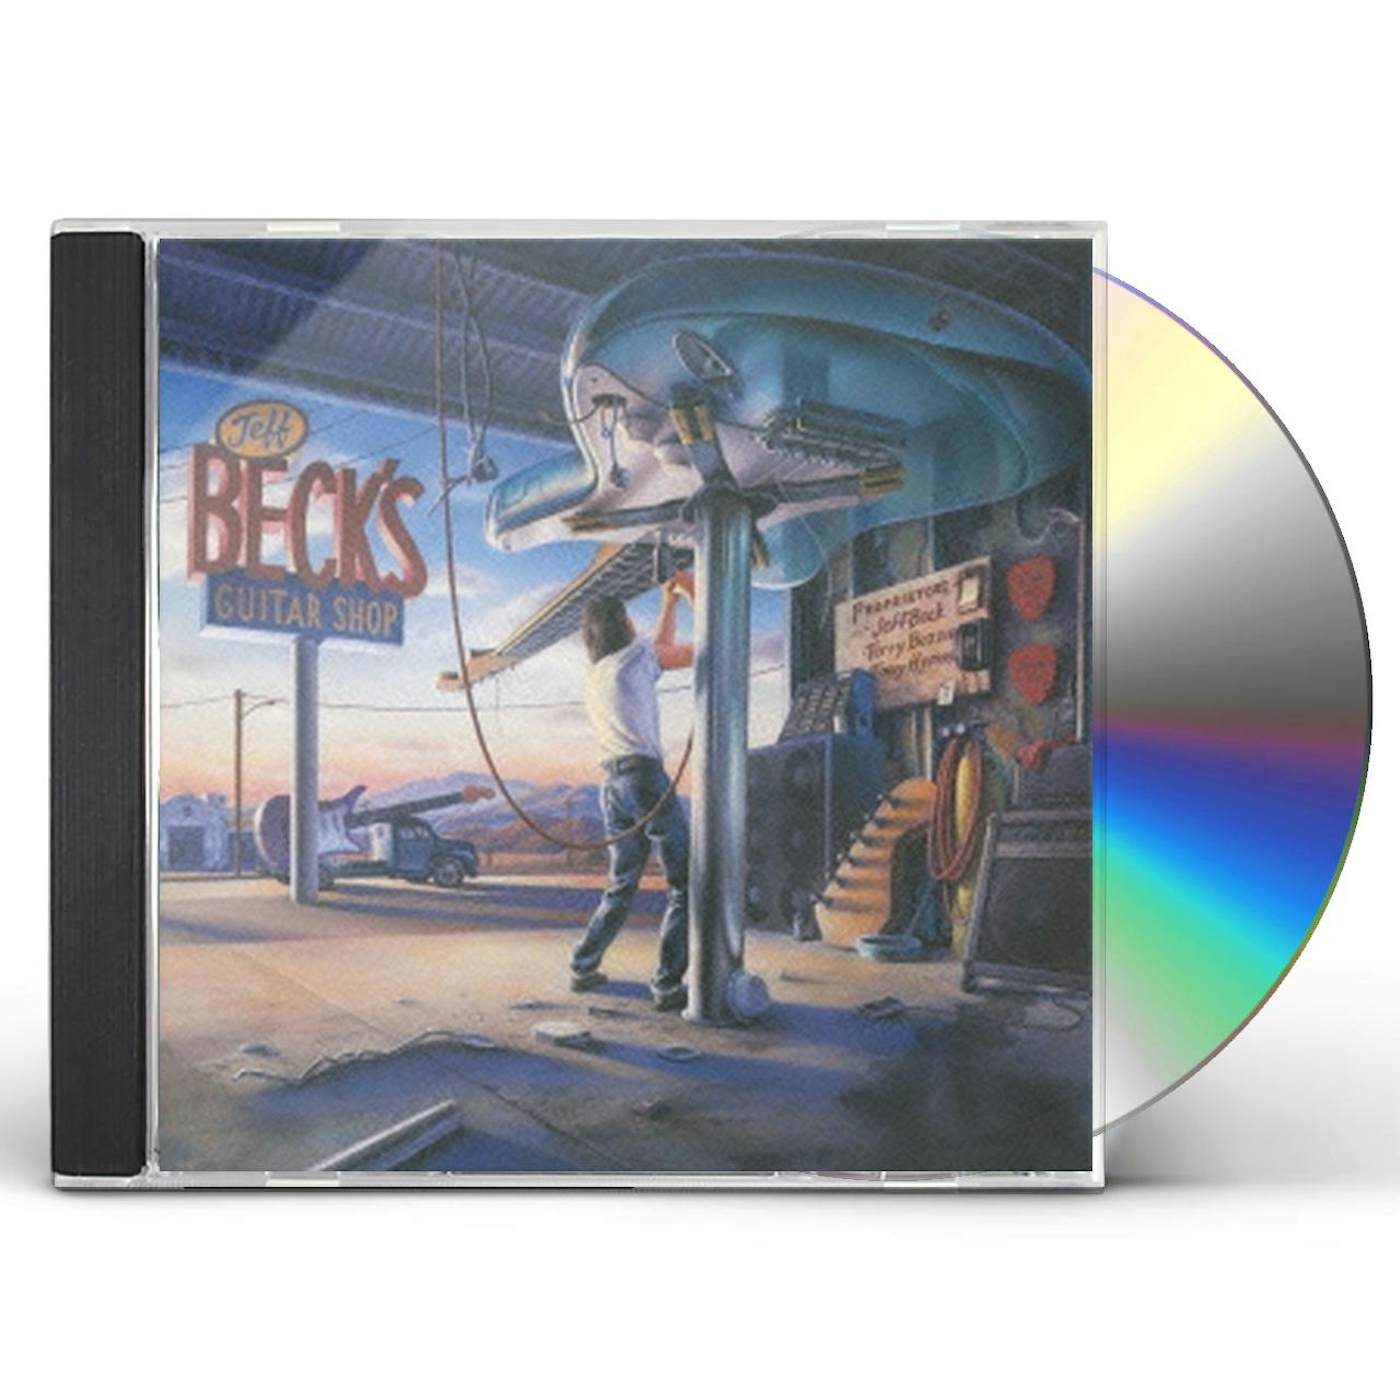 JEFF BECK'S GUITAR SHOP CD